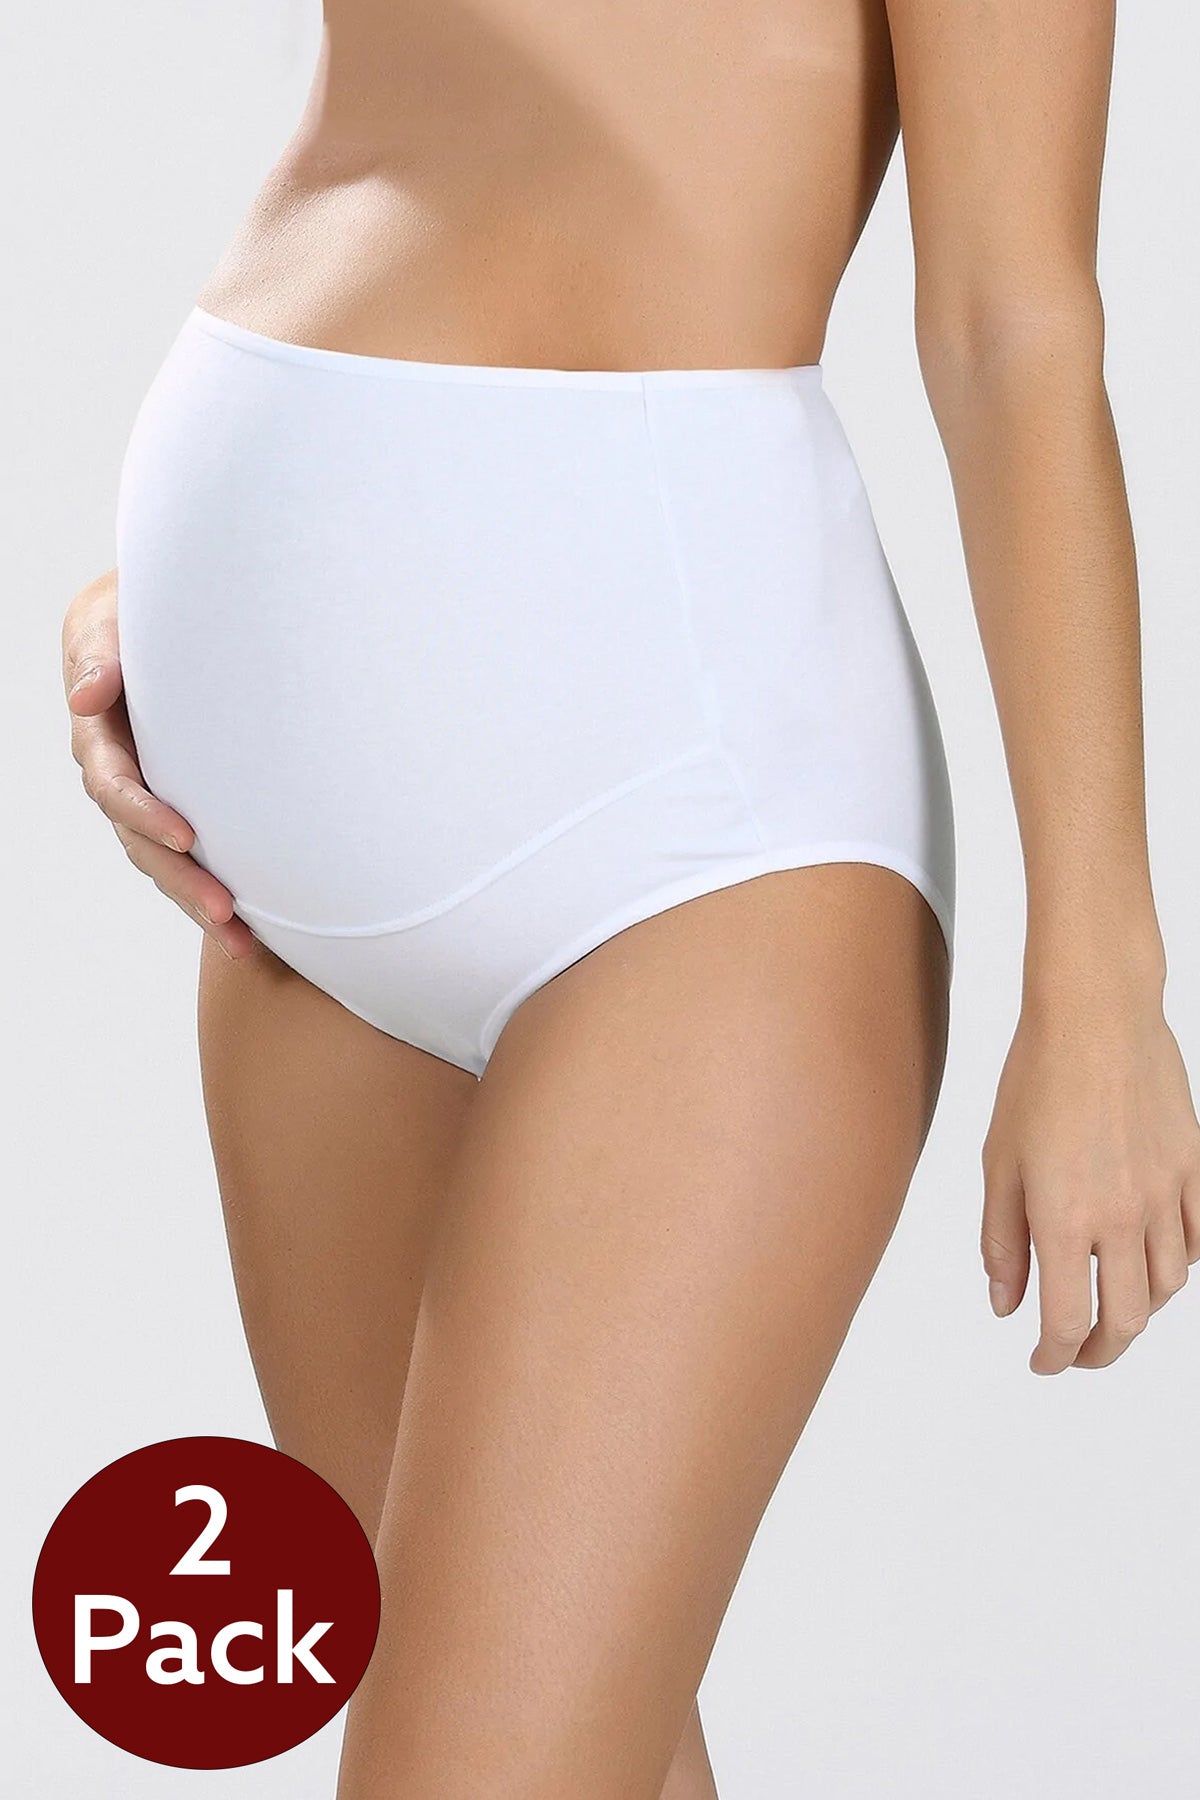 Cotton Maternity Underwear Pack of 2 | High Waist Pregnancy Underwear Women